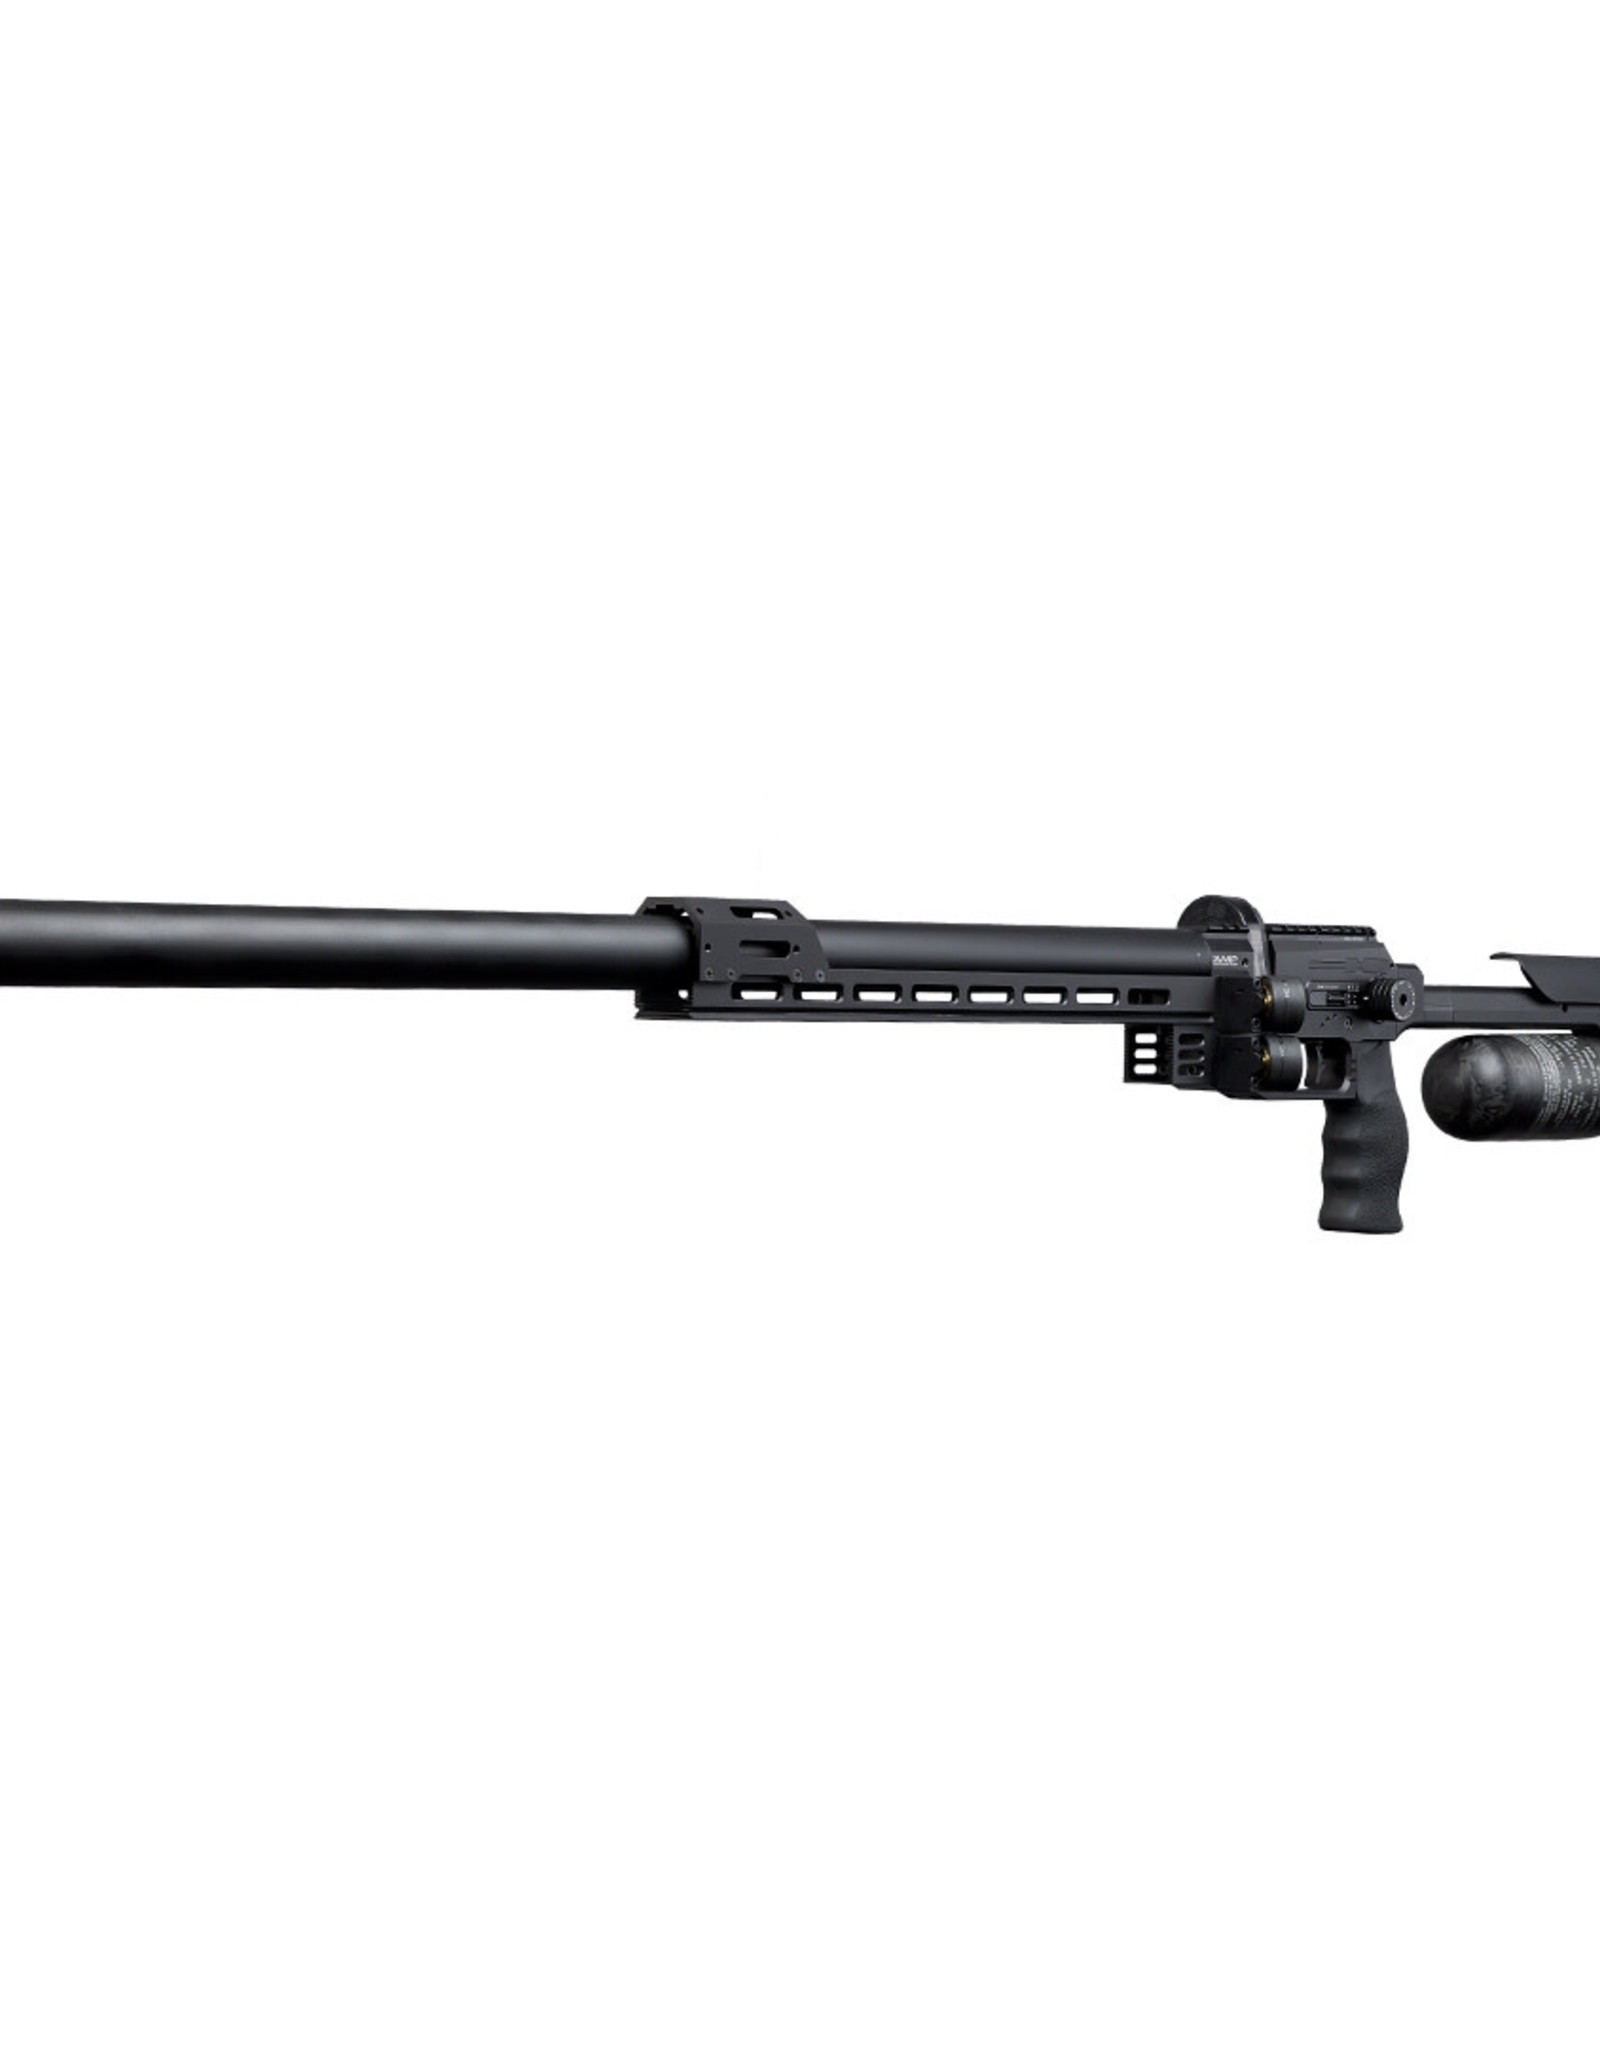 FX Airguns FX Panthera 700 - .25 caliber